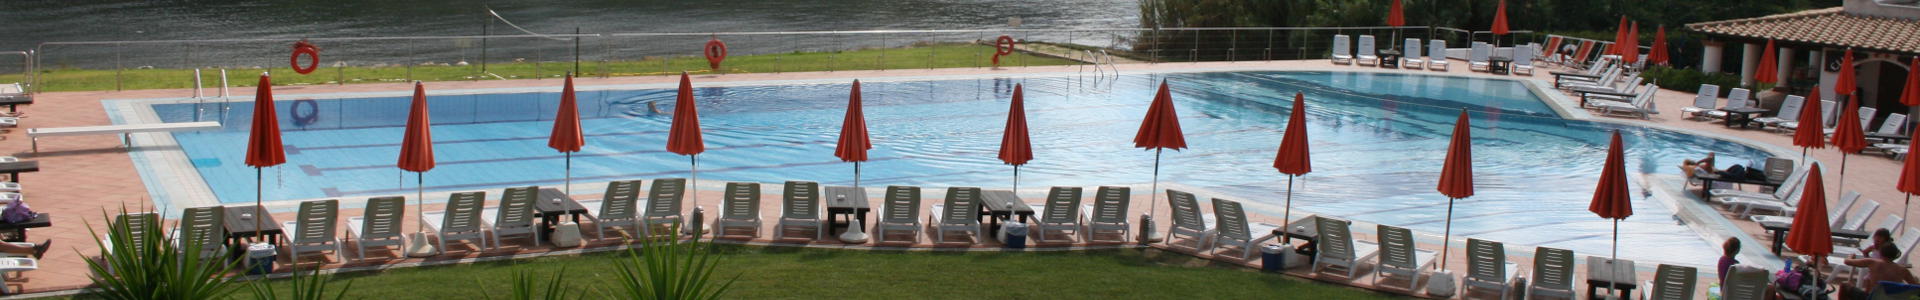 assistenza e accessori piscine Elba